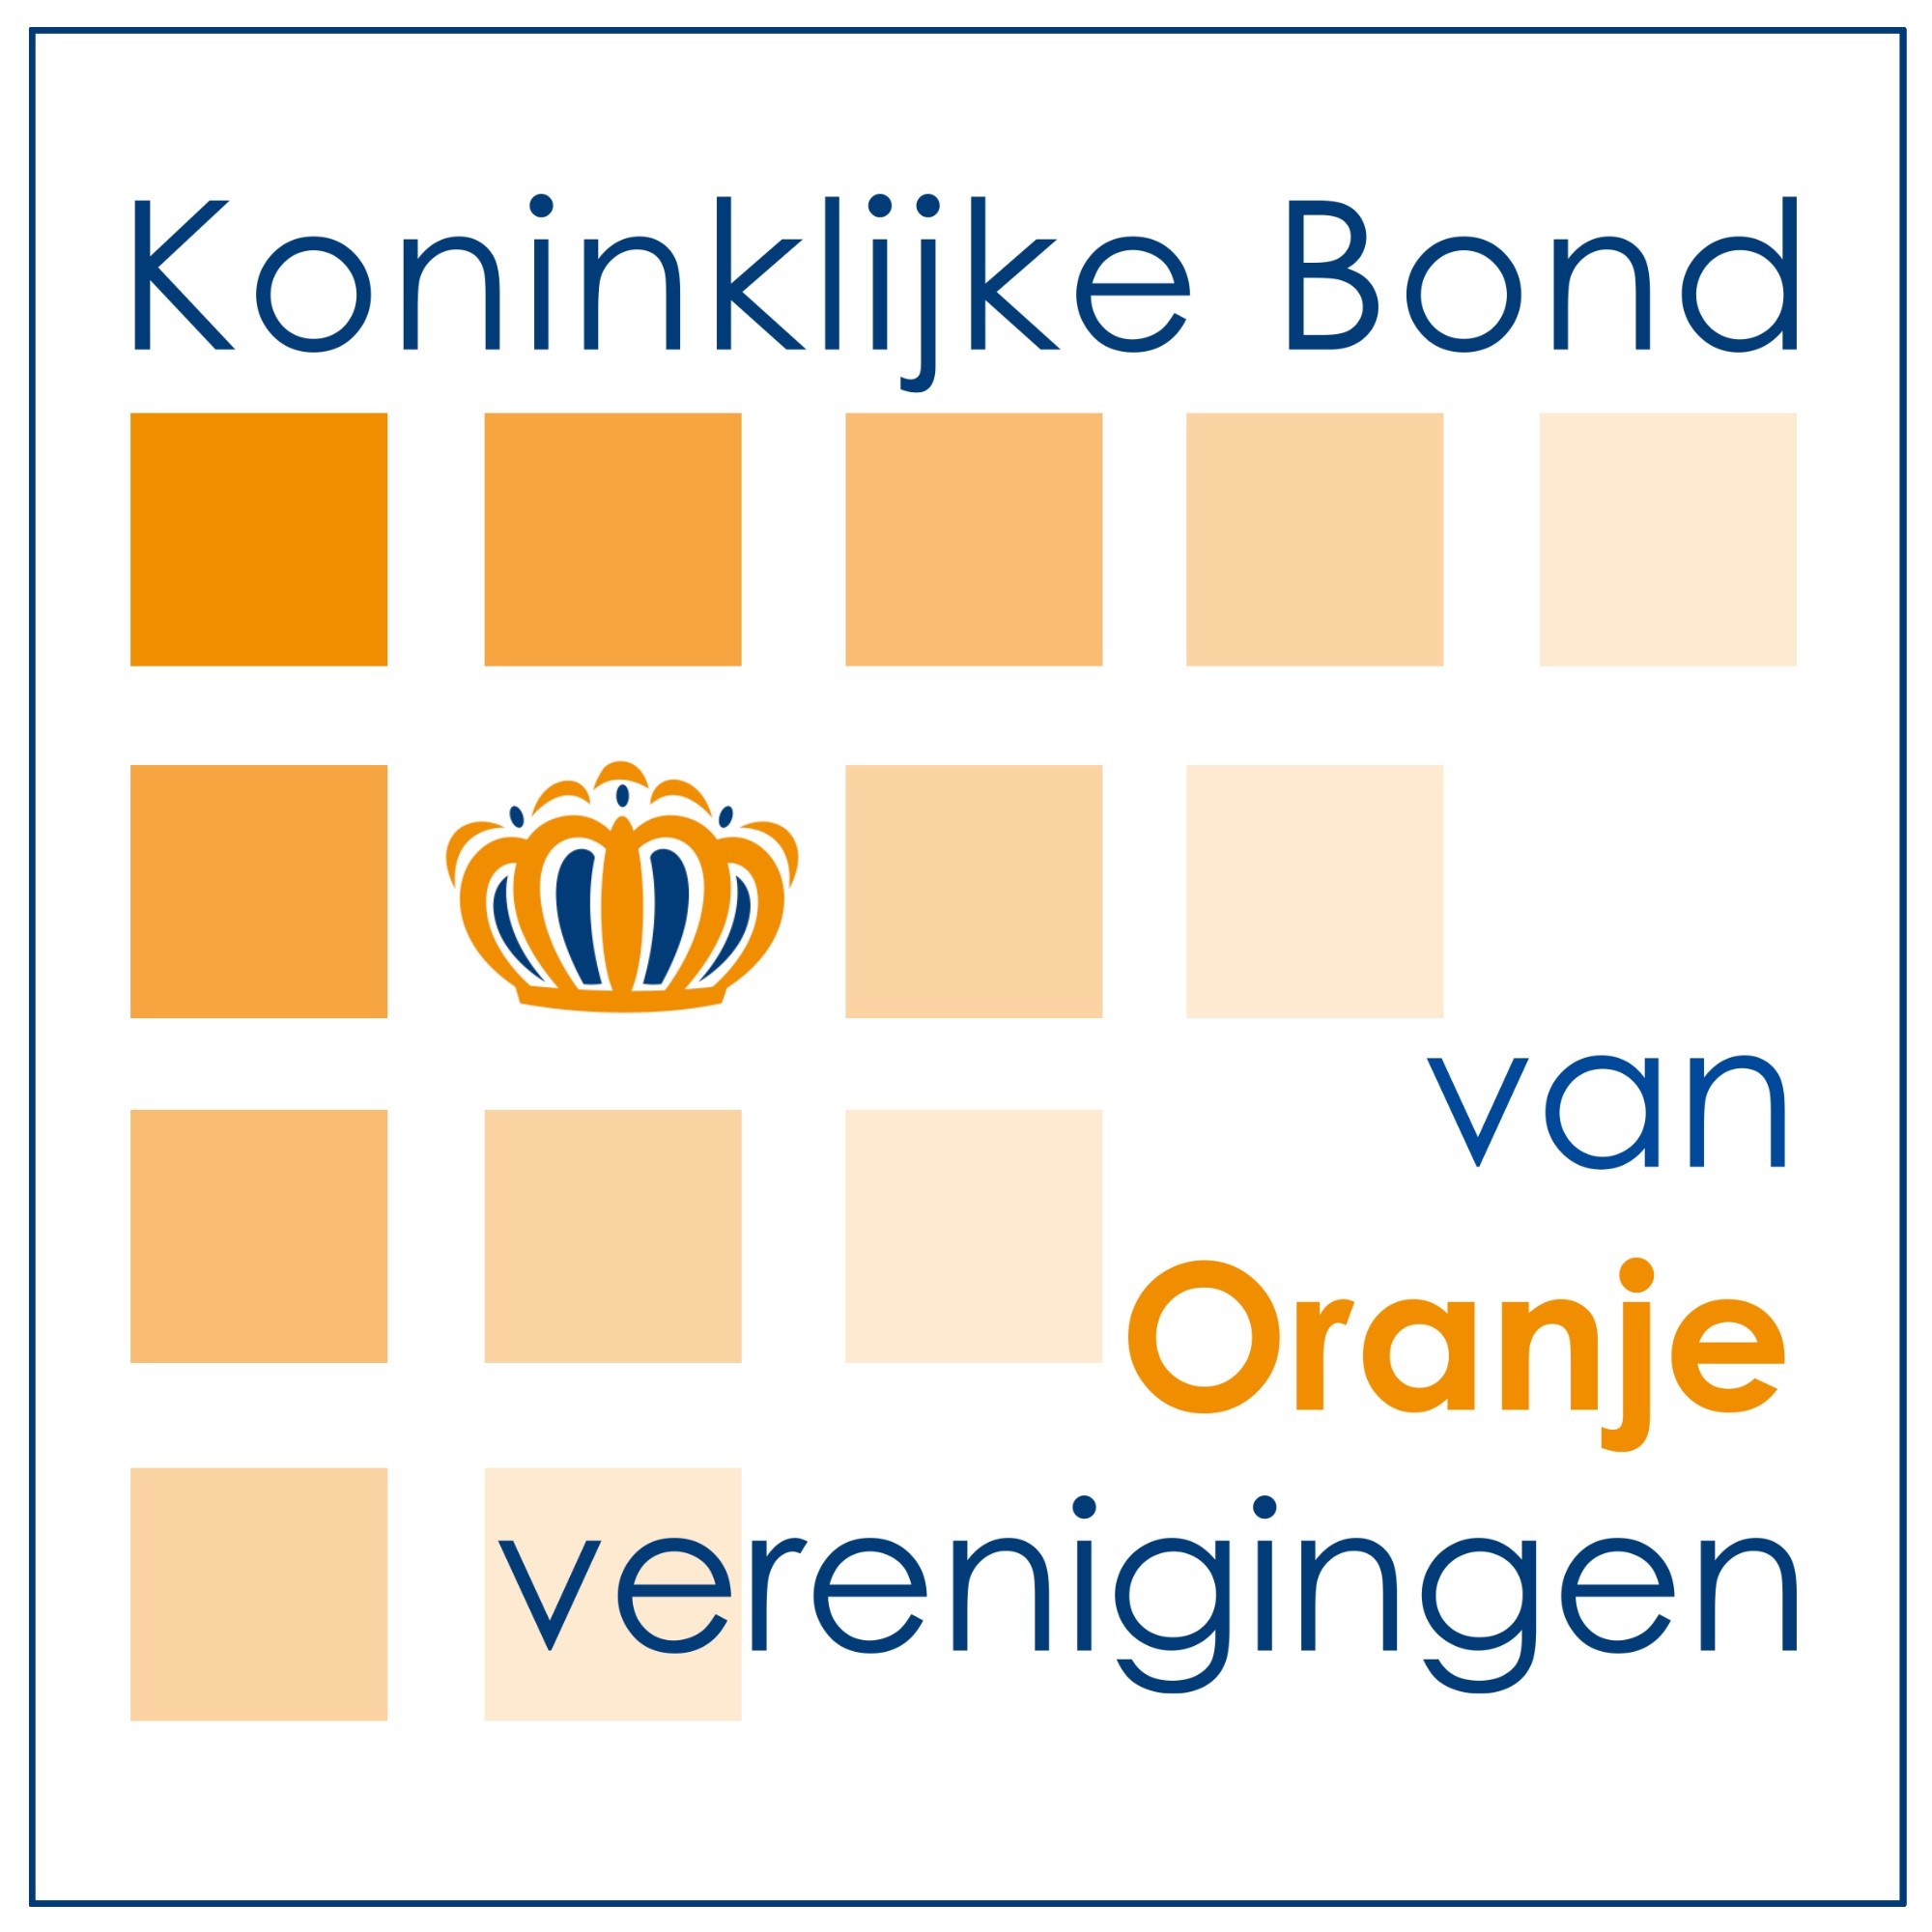 Welkom op de website van de Koninklijke Bond van Oranjeverenigingen